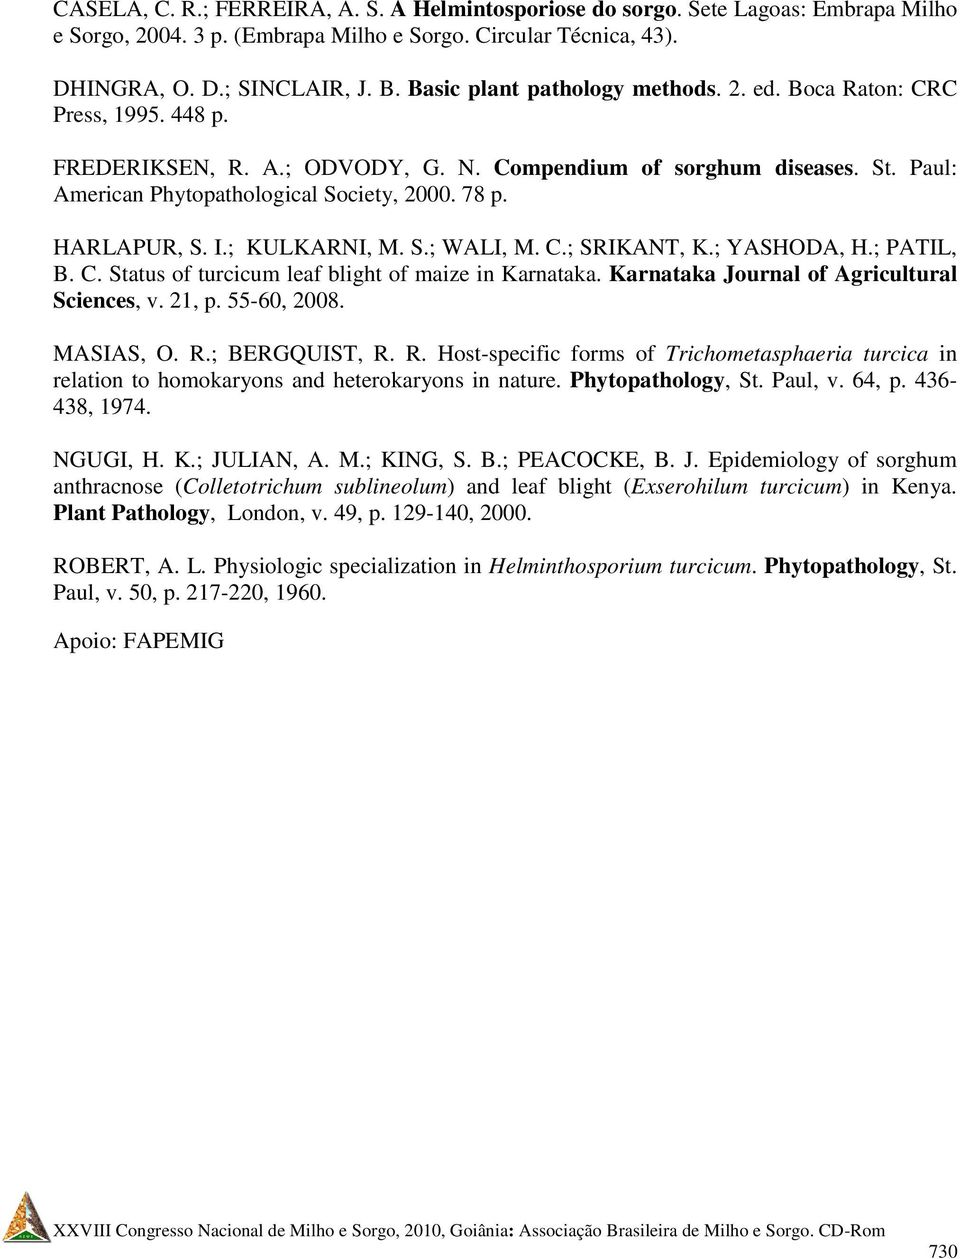 HARLAPUR, S. I.; KULKARNI, M. S.; WALI, M. C.; SRIKANT, K.; YASHODA, H.; PATIL, B. C. Status of turcicum leaf blight of maize in Karnataka. Karnataka Journal of Agricultural Sciences, v. 21, p.